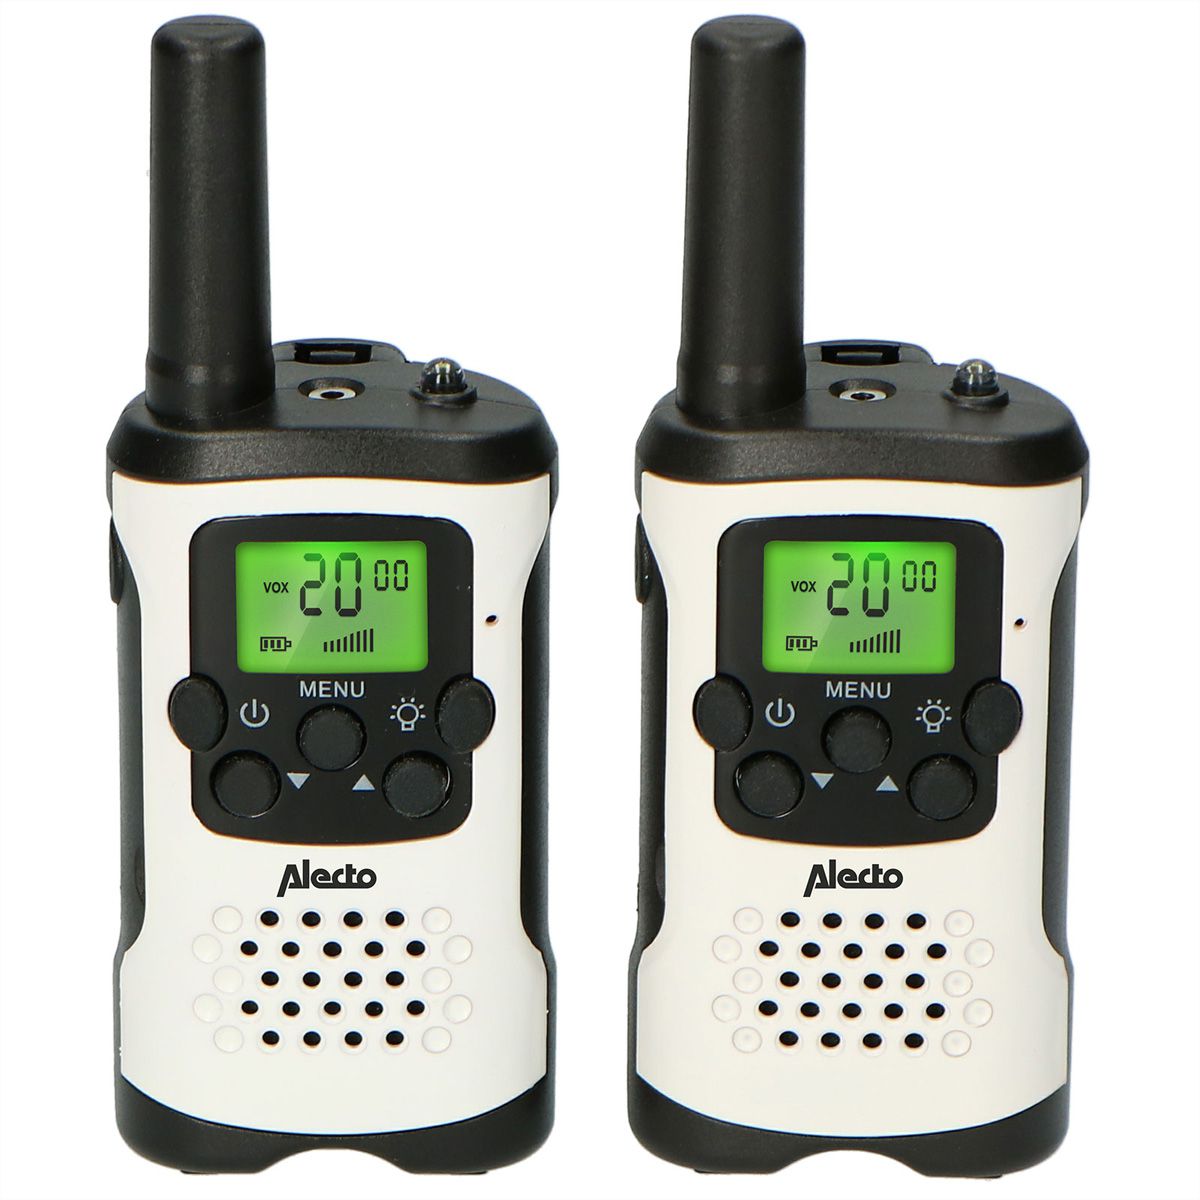 L'importance d'utiliser un talkie-walkie- Utile et pratique